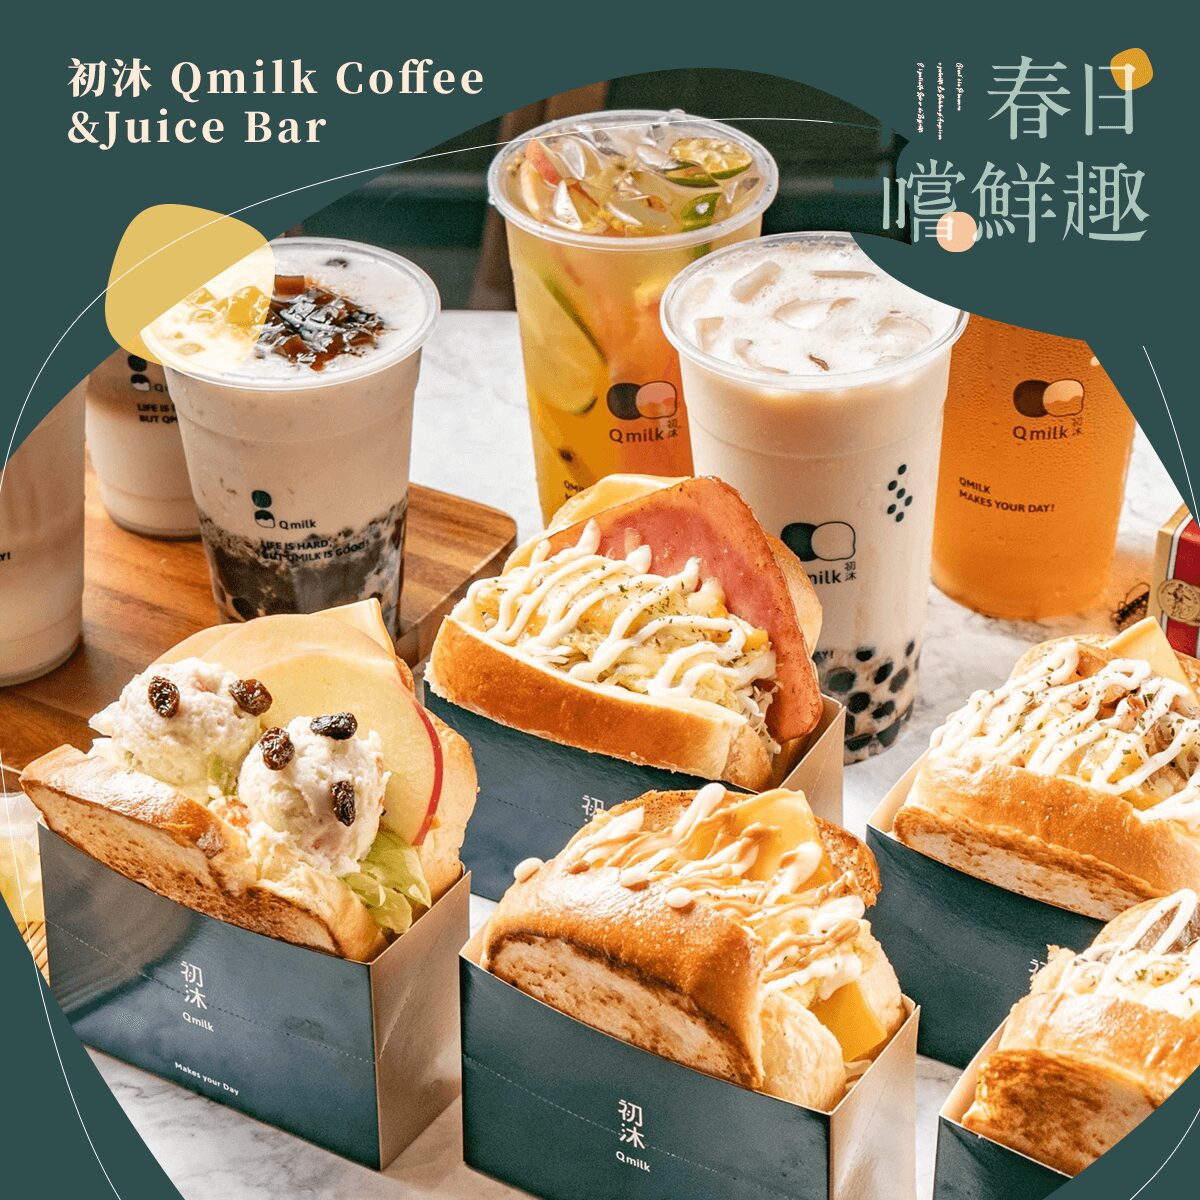 初沐 Qmilk Coffee&Juice Bar：可享任一款粉紅草莓系列飲品 9 折